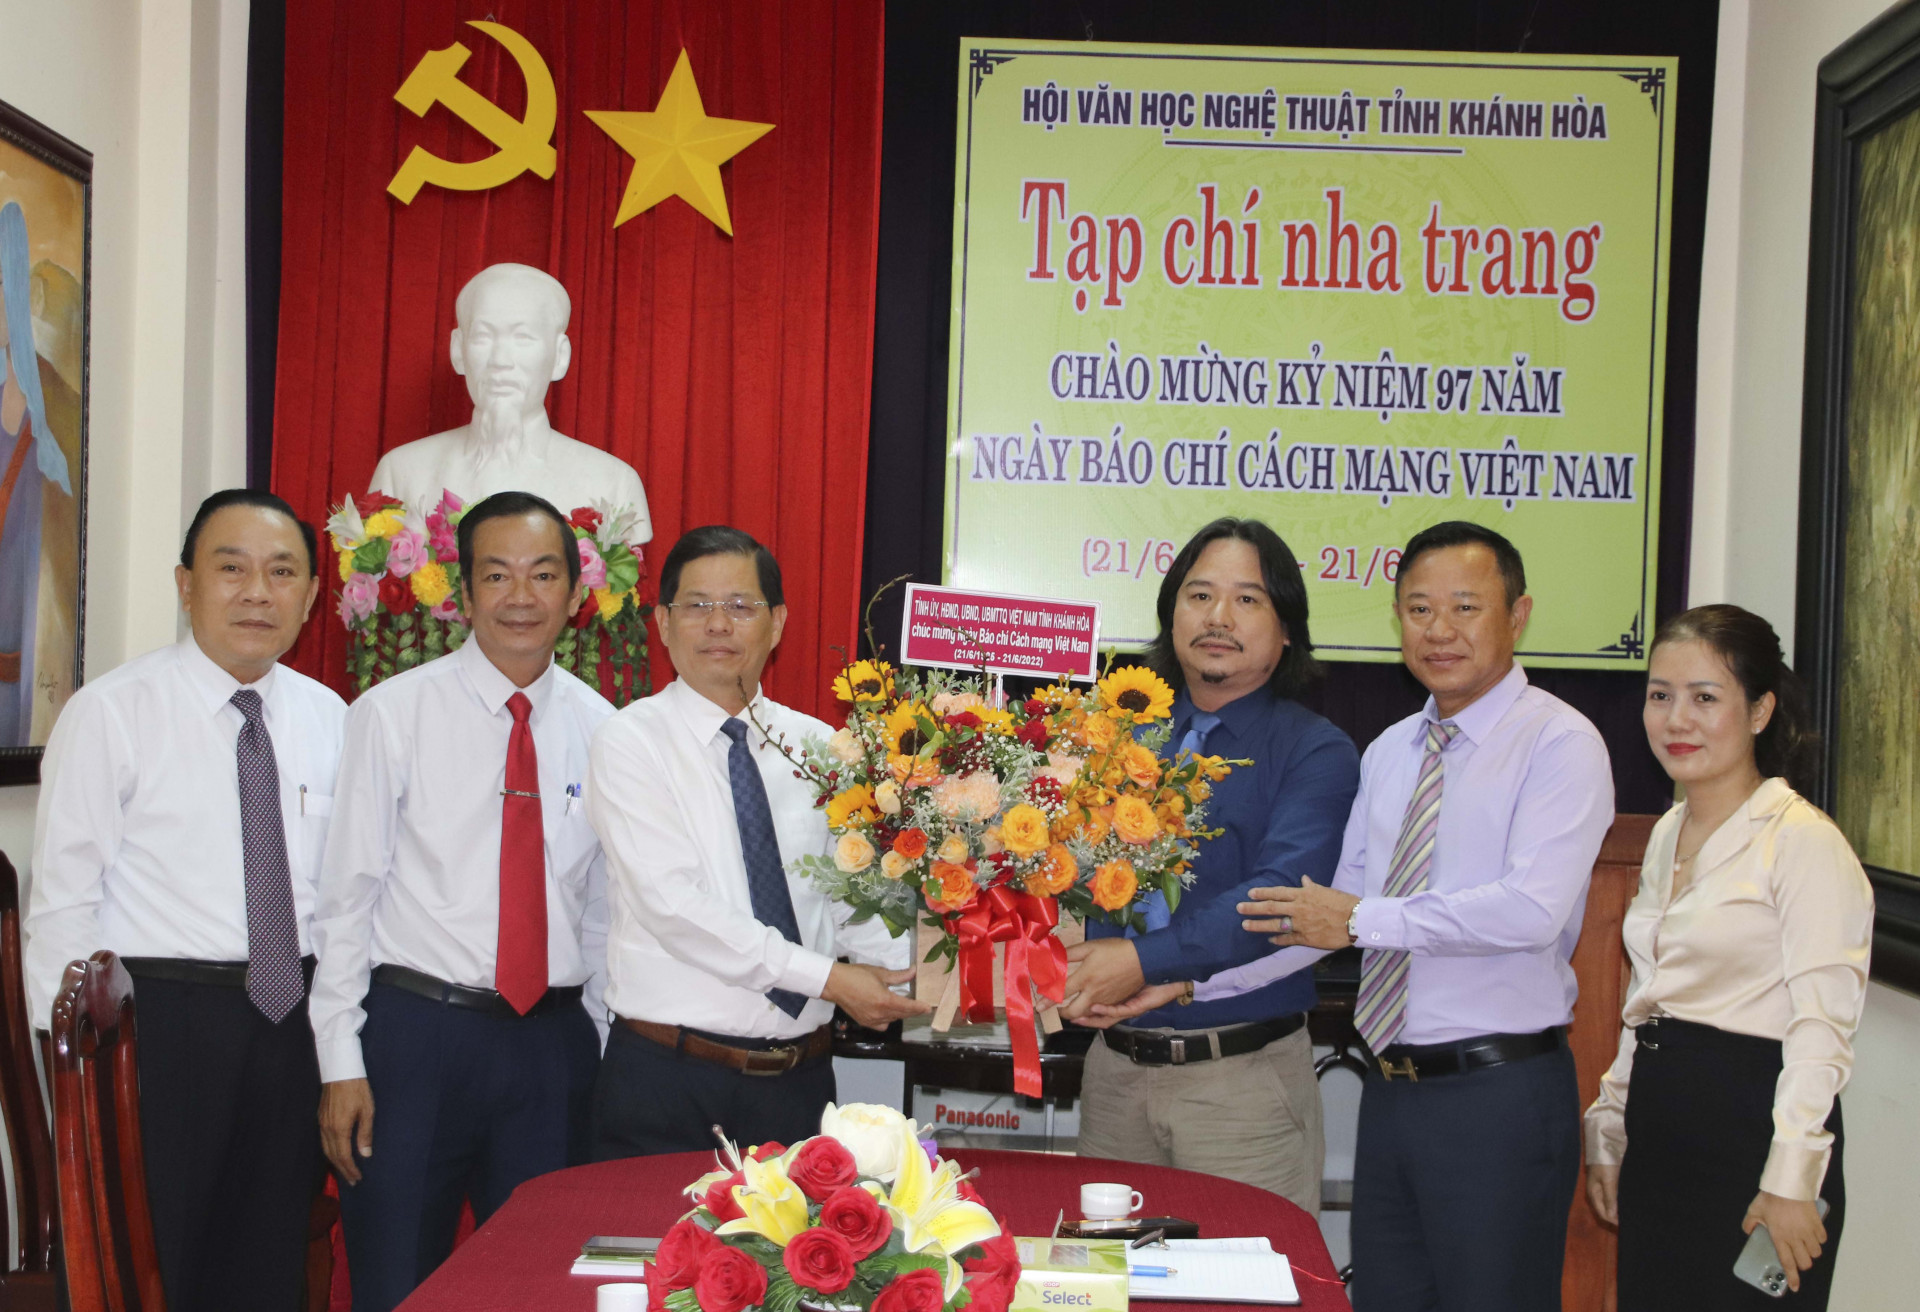 Ông Nguyễn Tấn Tuân tặng hoa chúc mừng Tạp chí Nha Trang